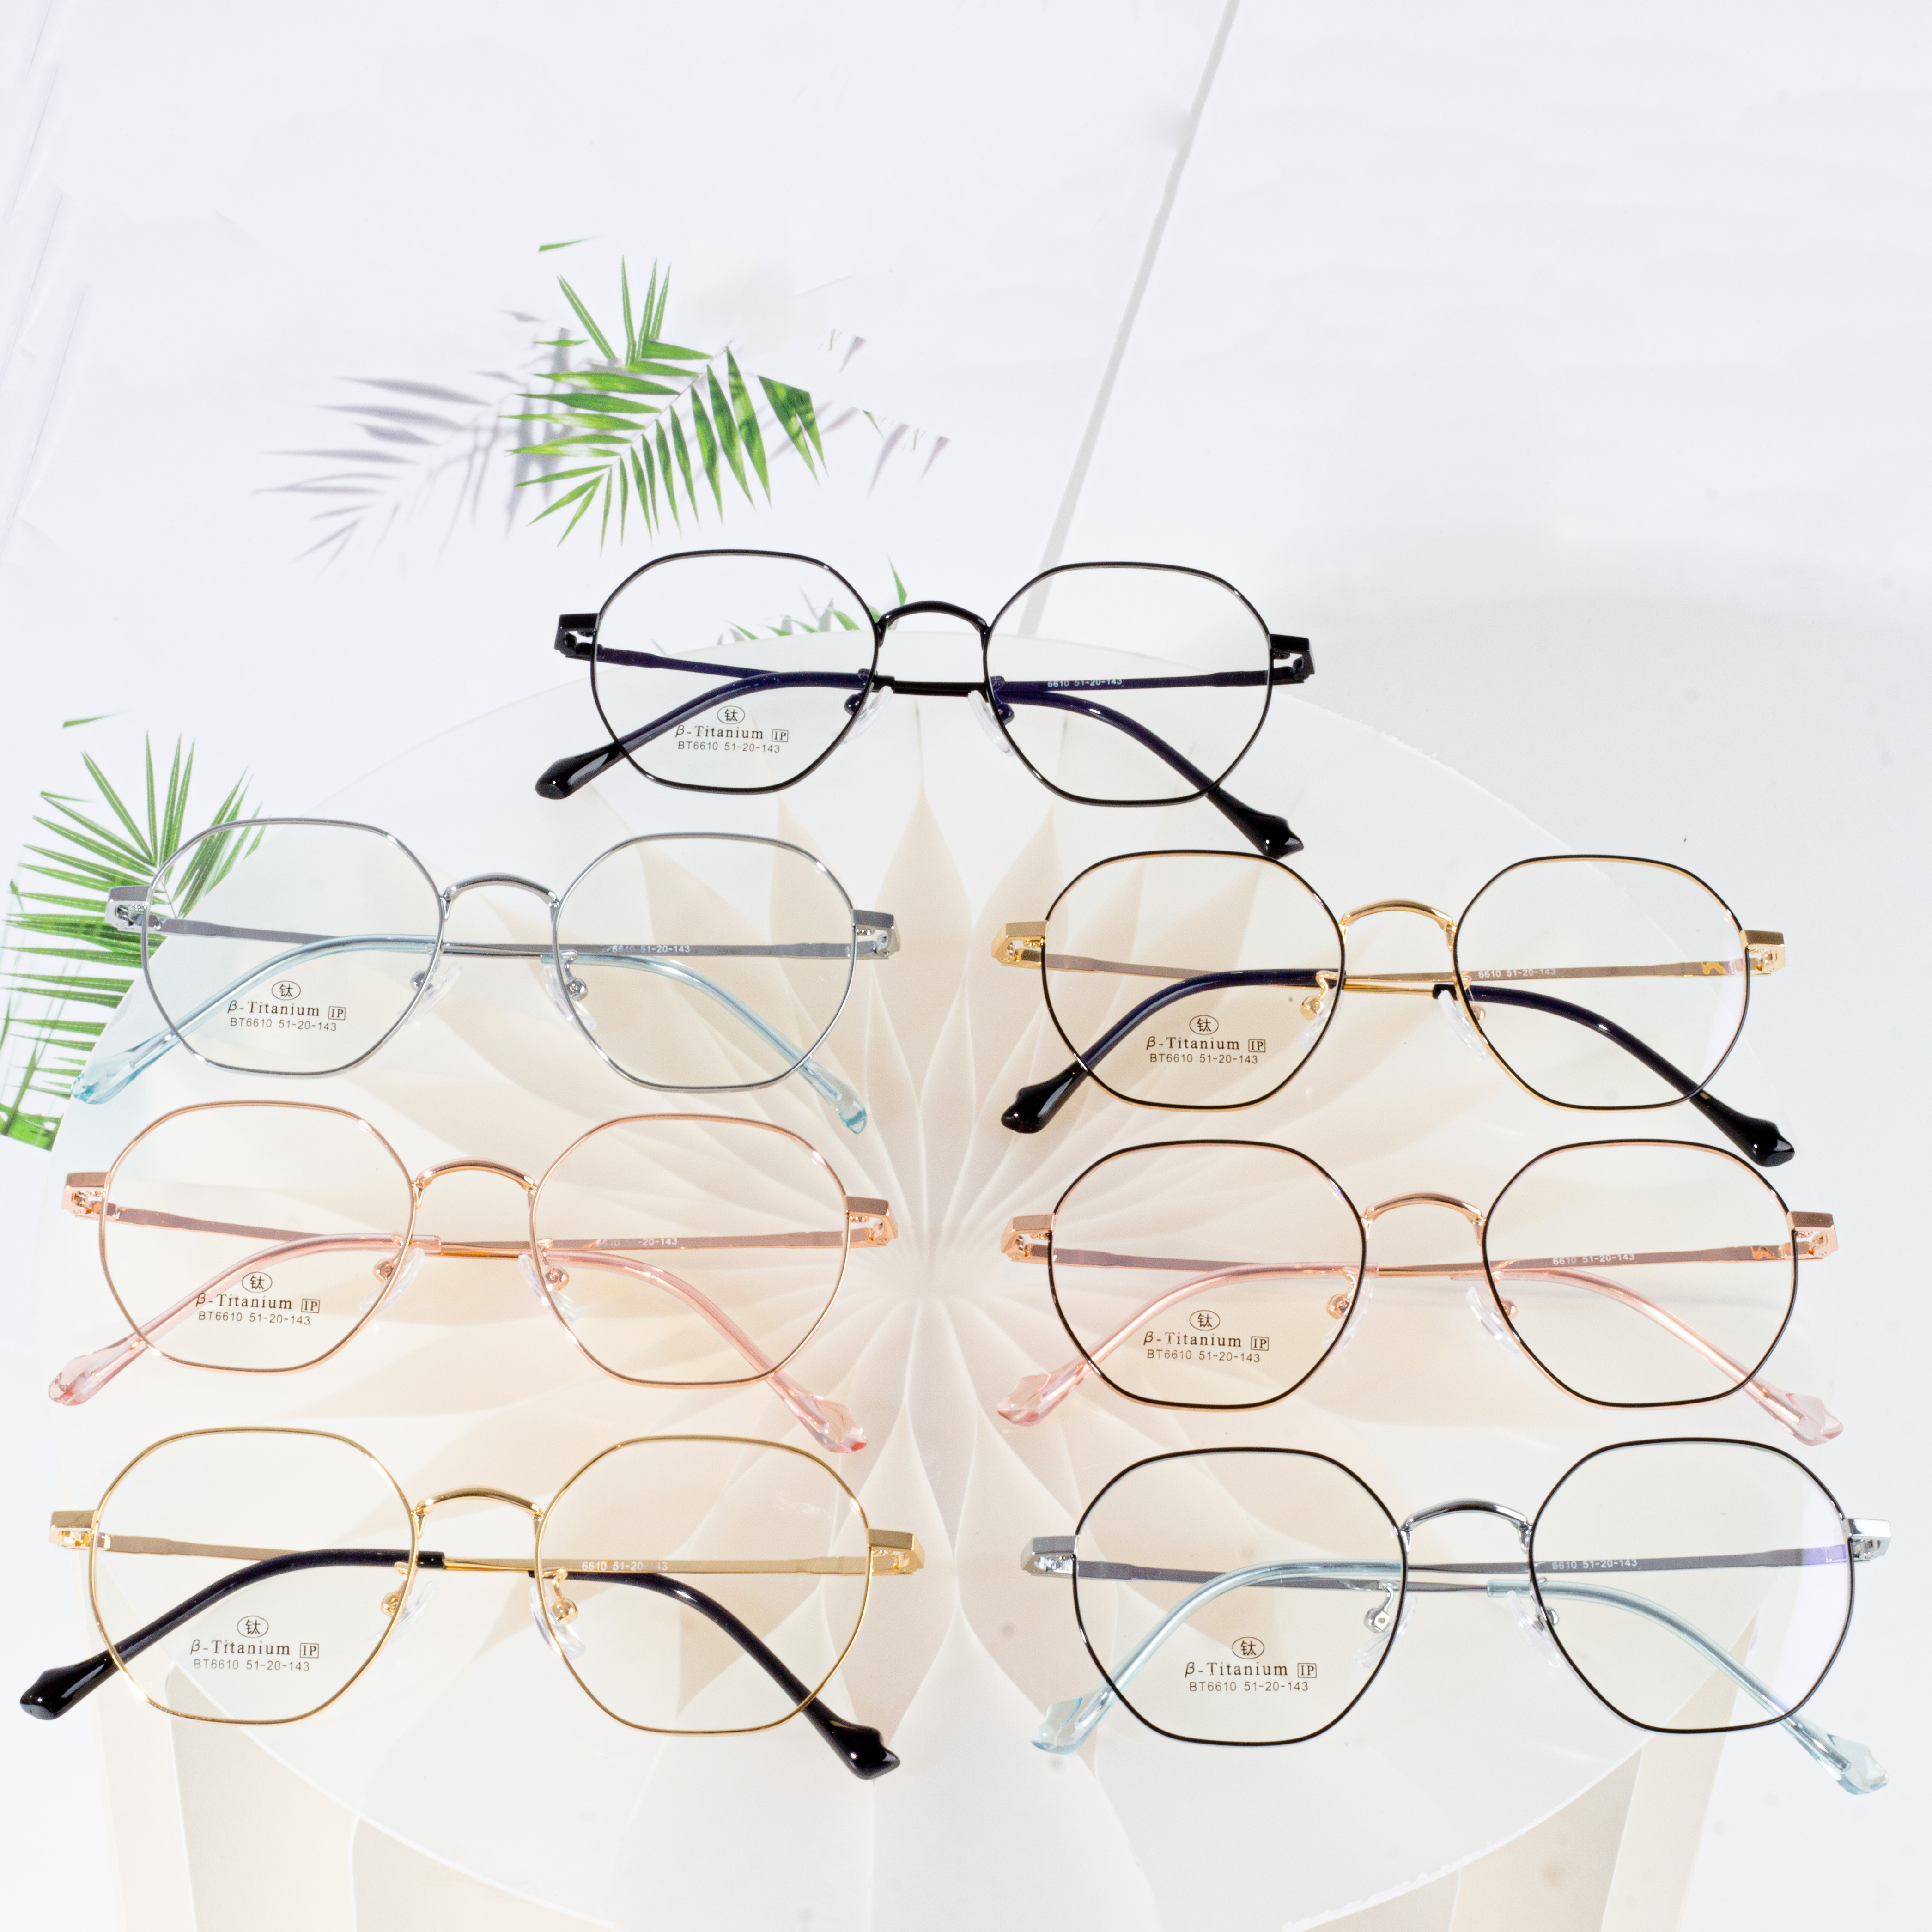 Veleprodaja modnih naočala naočala s optičkim okvirom